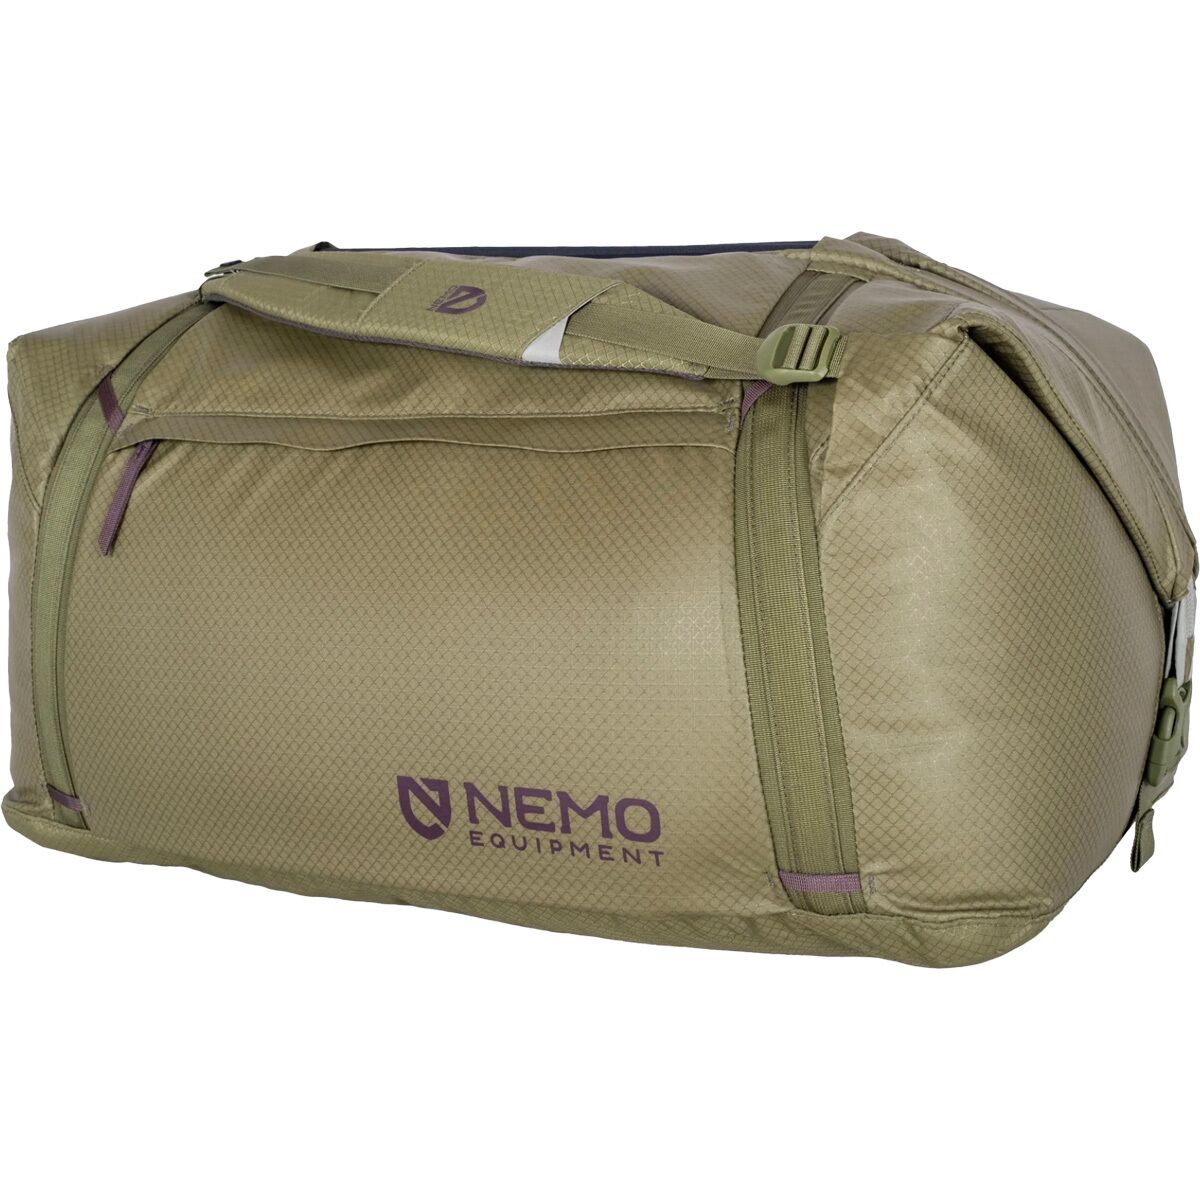 Двойная трансформируемая спортивная сумка объемом 100 л Nemo Equipment Inc., цвет nova